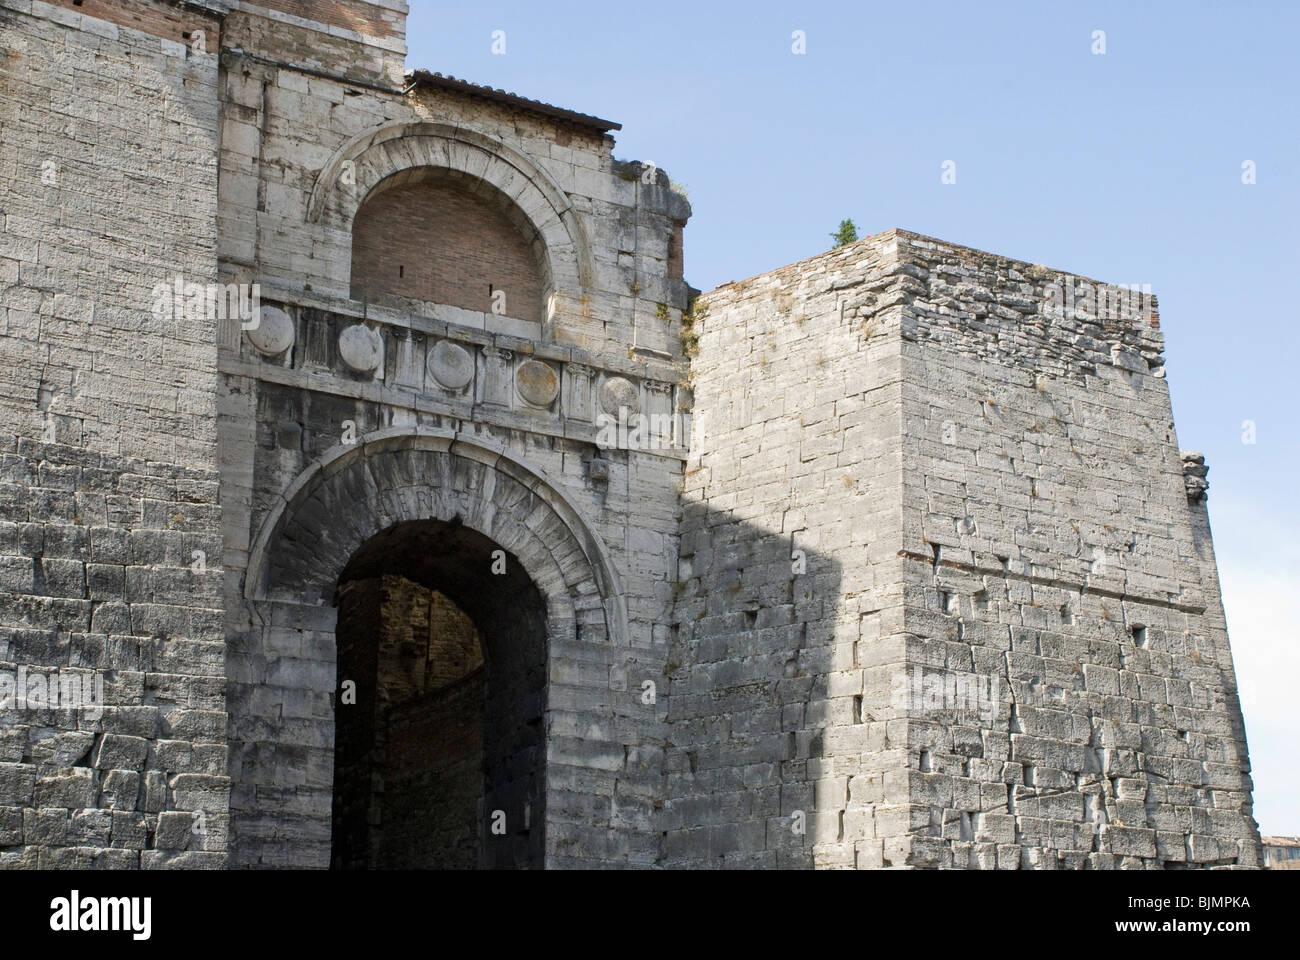 Italy, Umbria, Perugia, old town, Arco Etrusco, Etruscan citygate Stock Photo